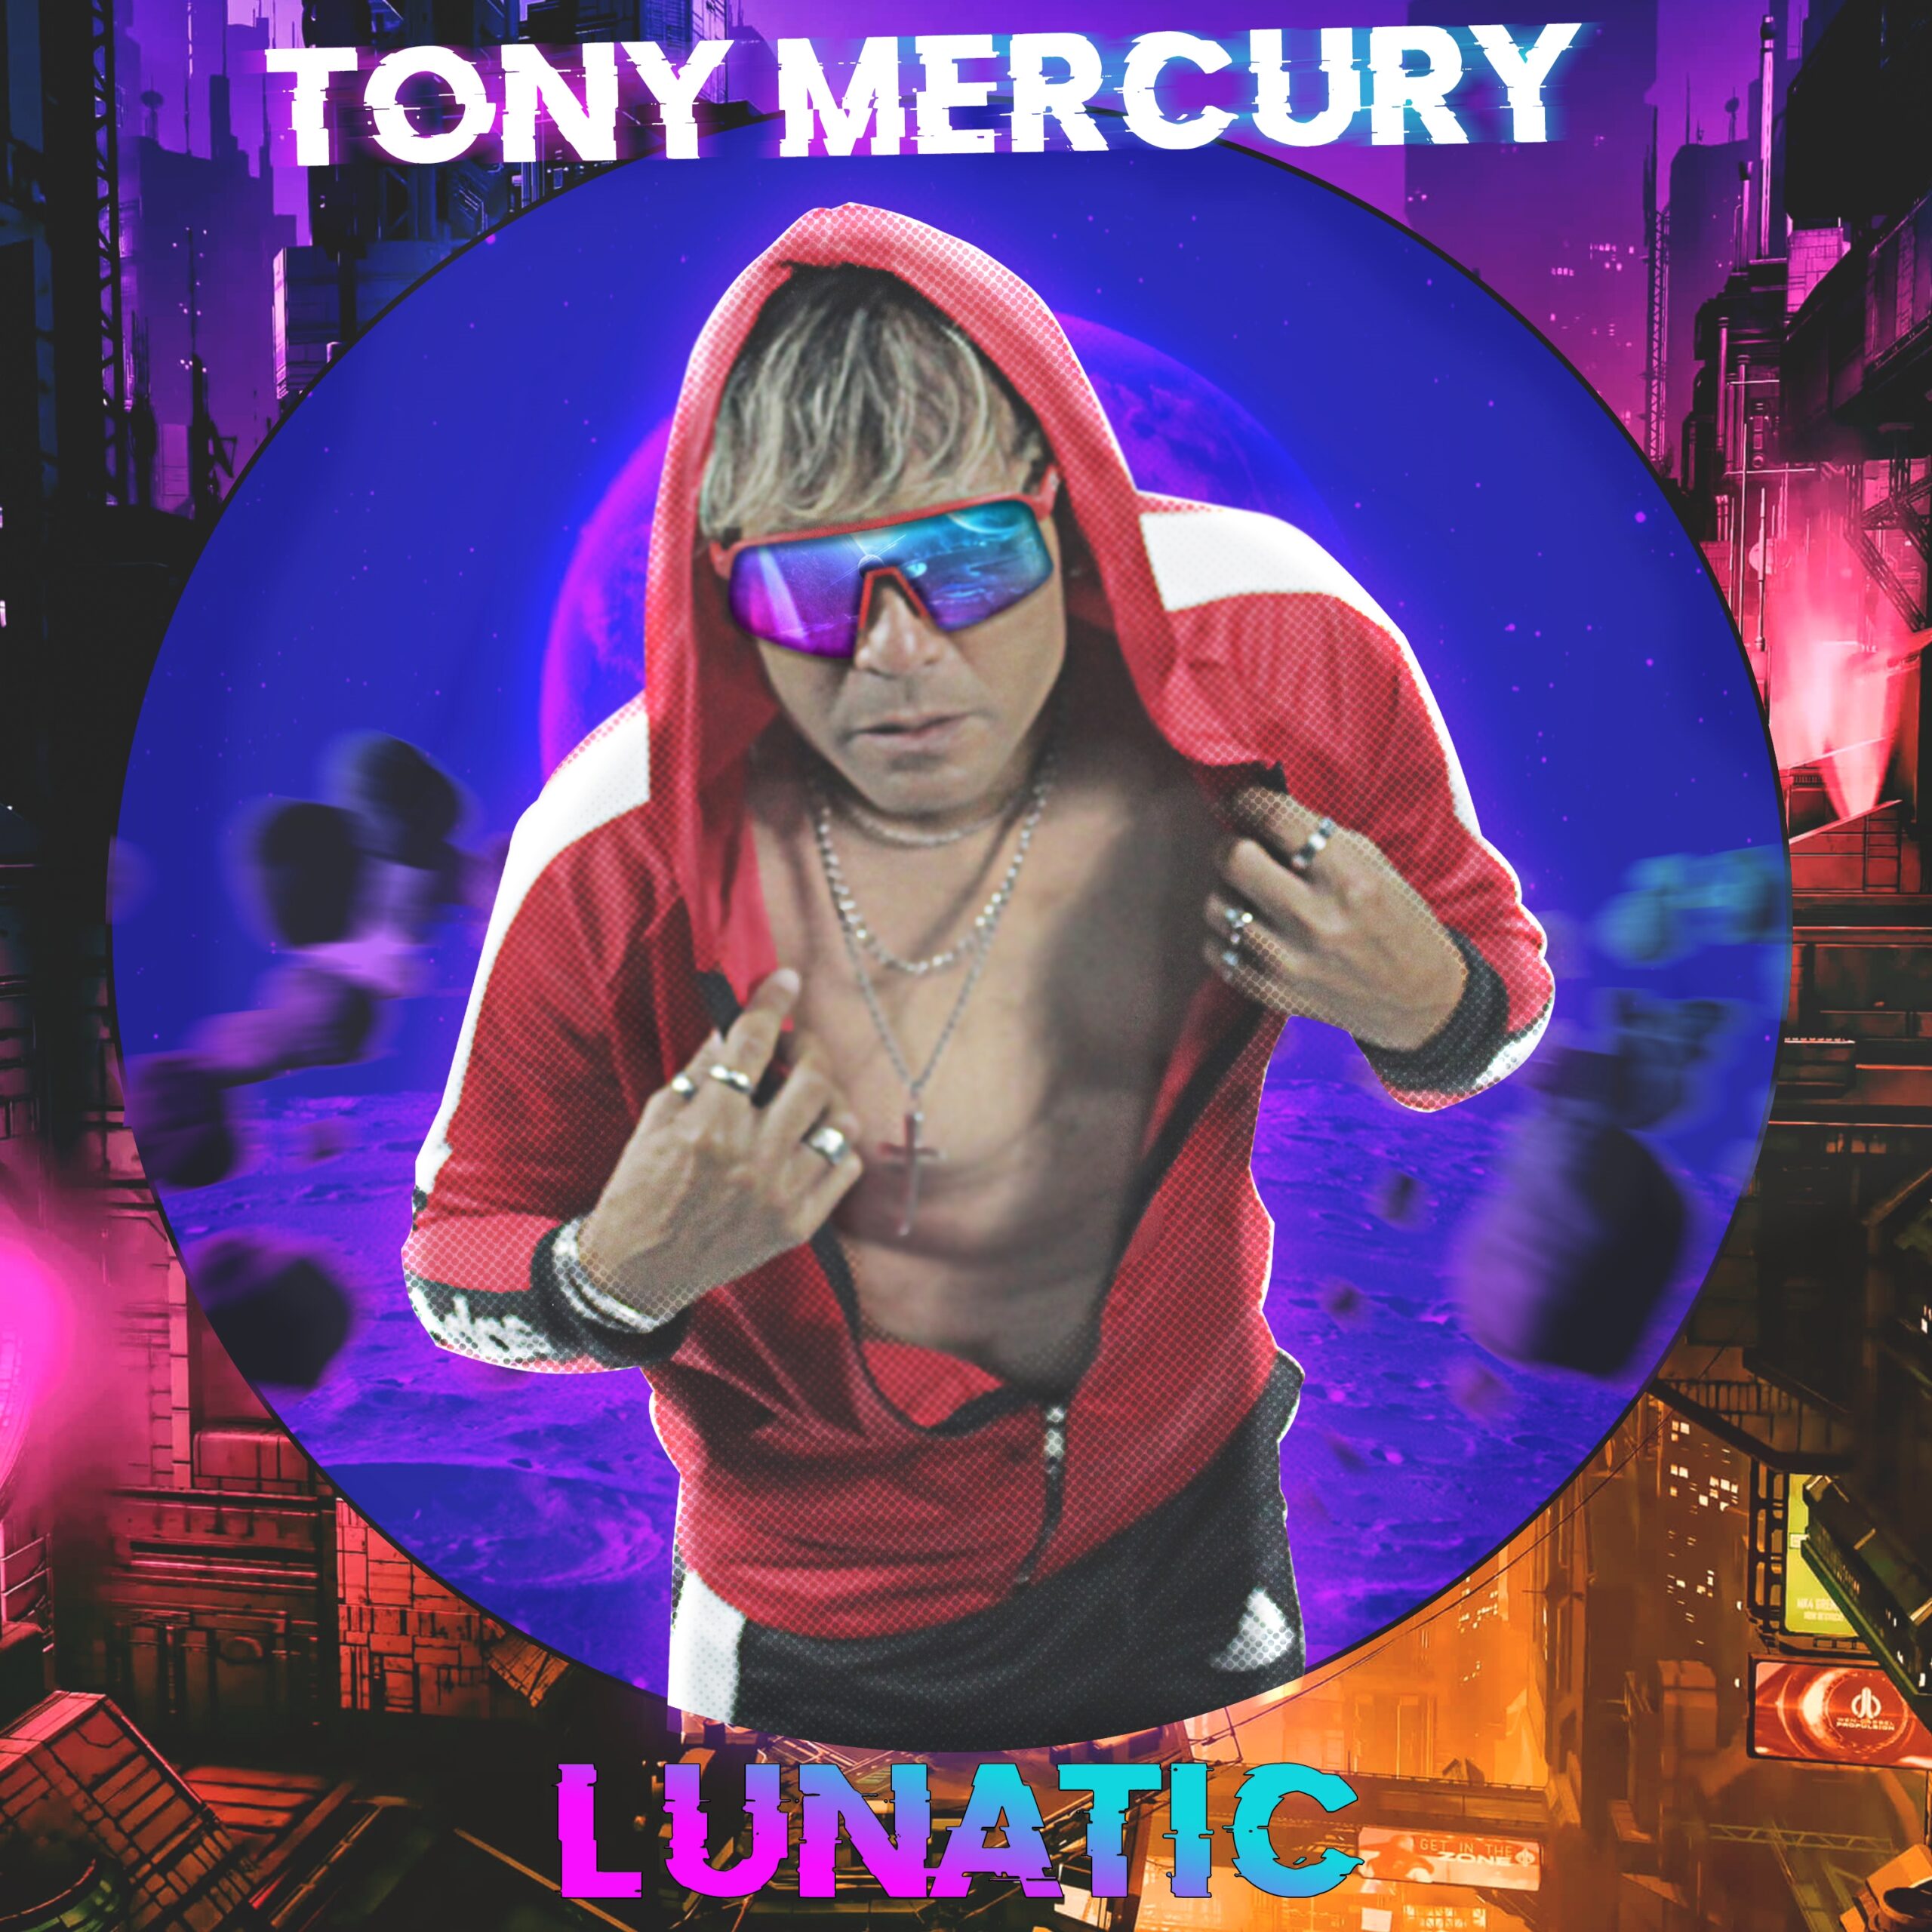 Tony Mercury regresa con nuevo sencillo “Lunatic” cargado de un sonido avasallante